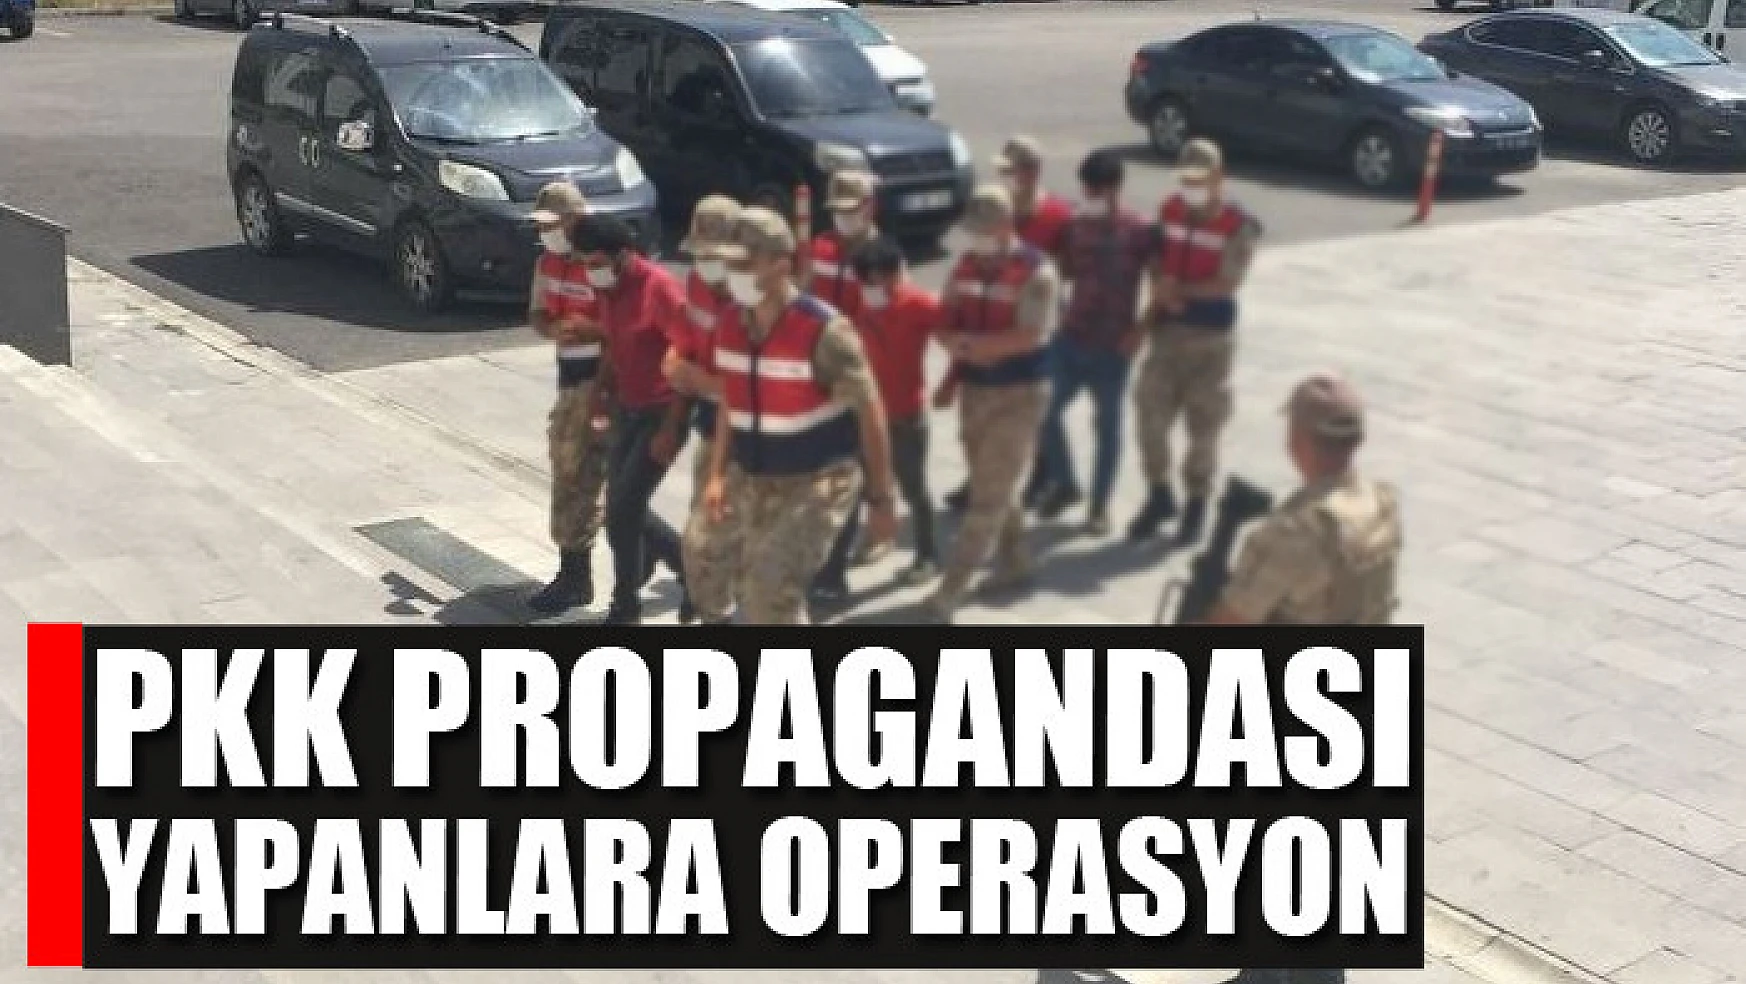 PKK propagandası yapanlara operasyon